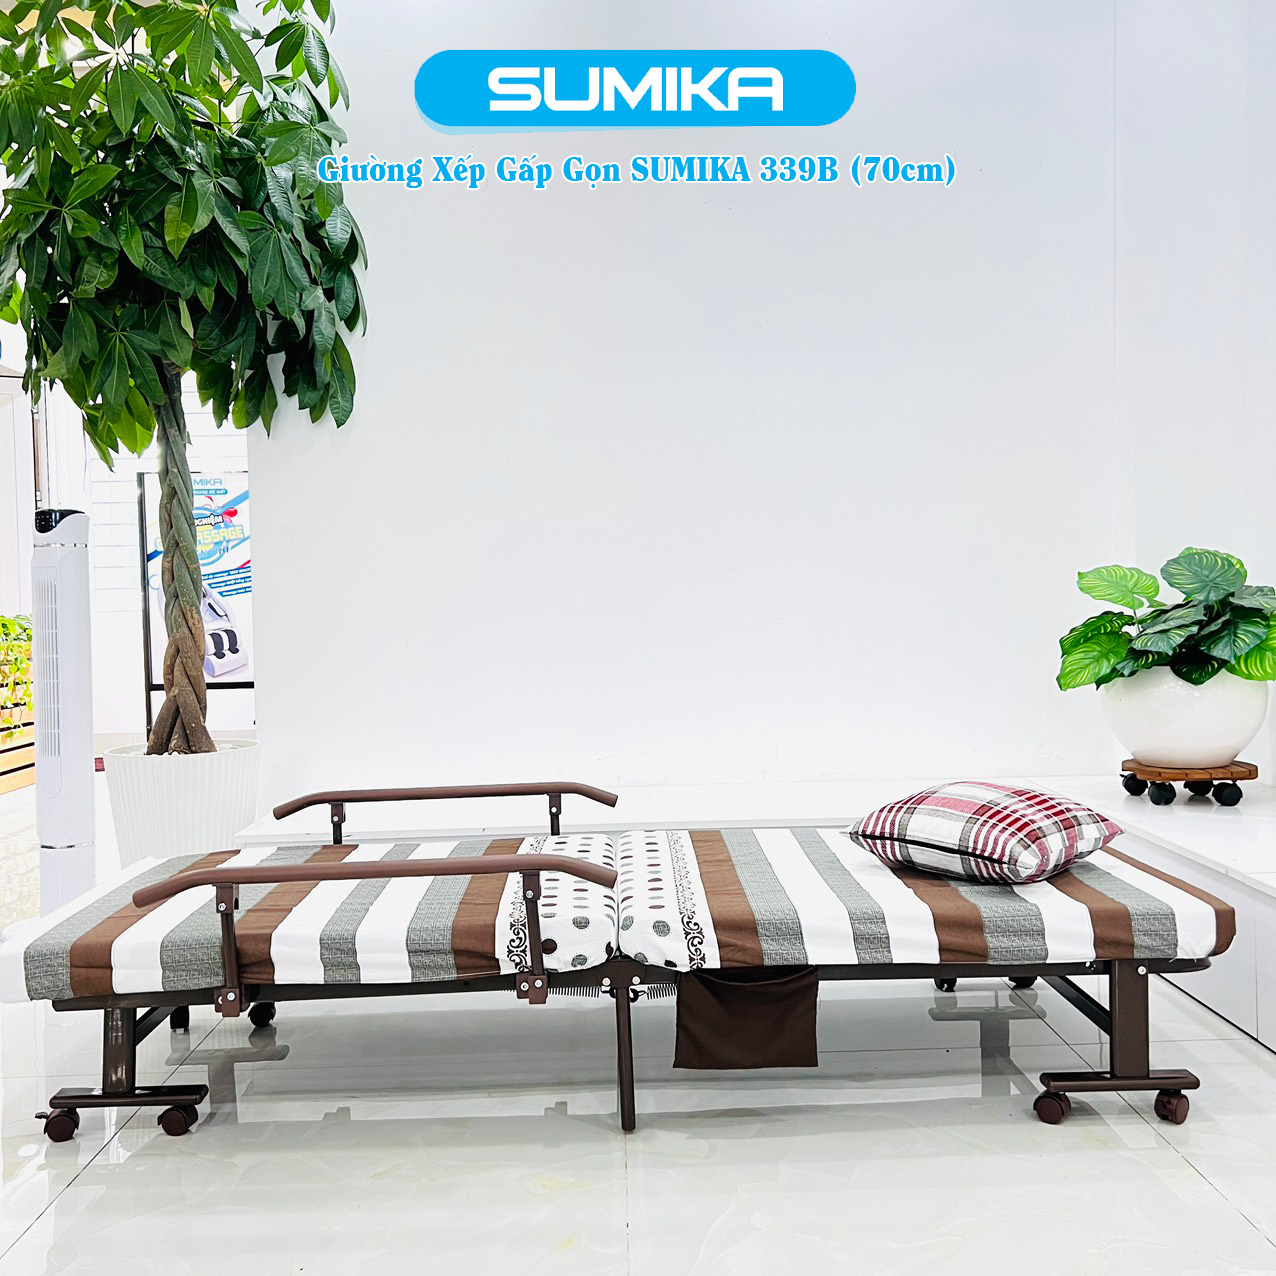 Giường xếp SUMIKA 339B - giải pháp thông minh cho sinh viên